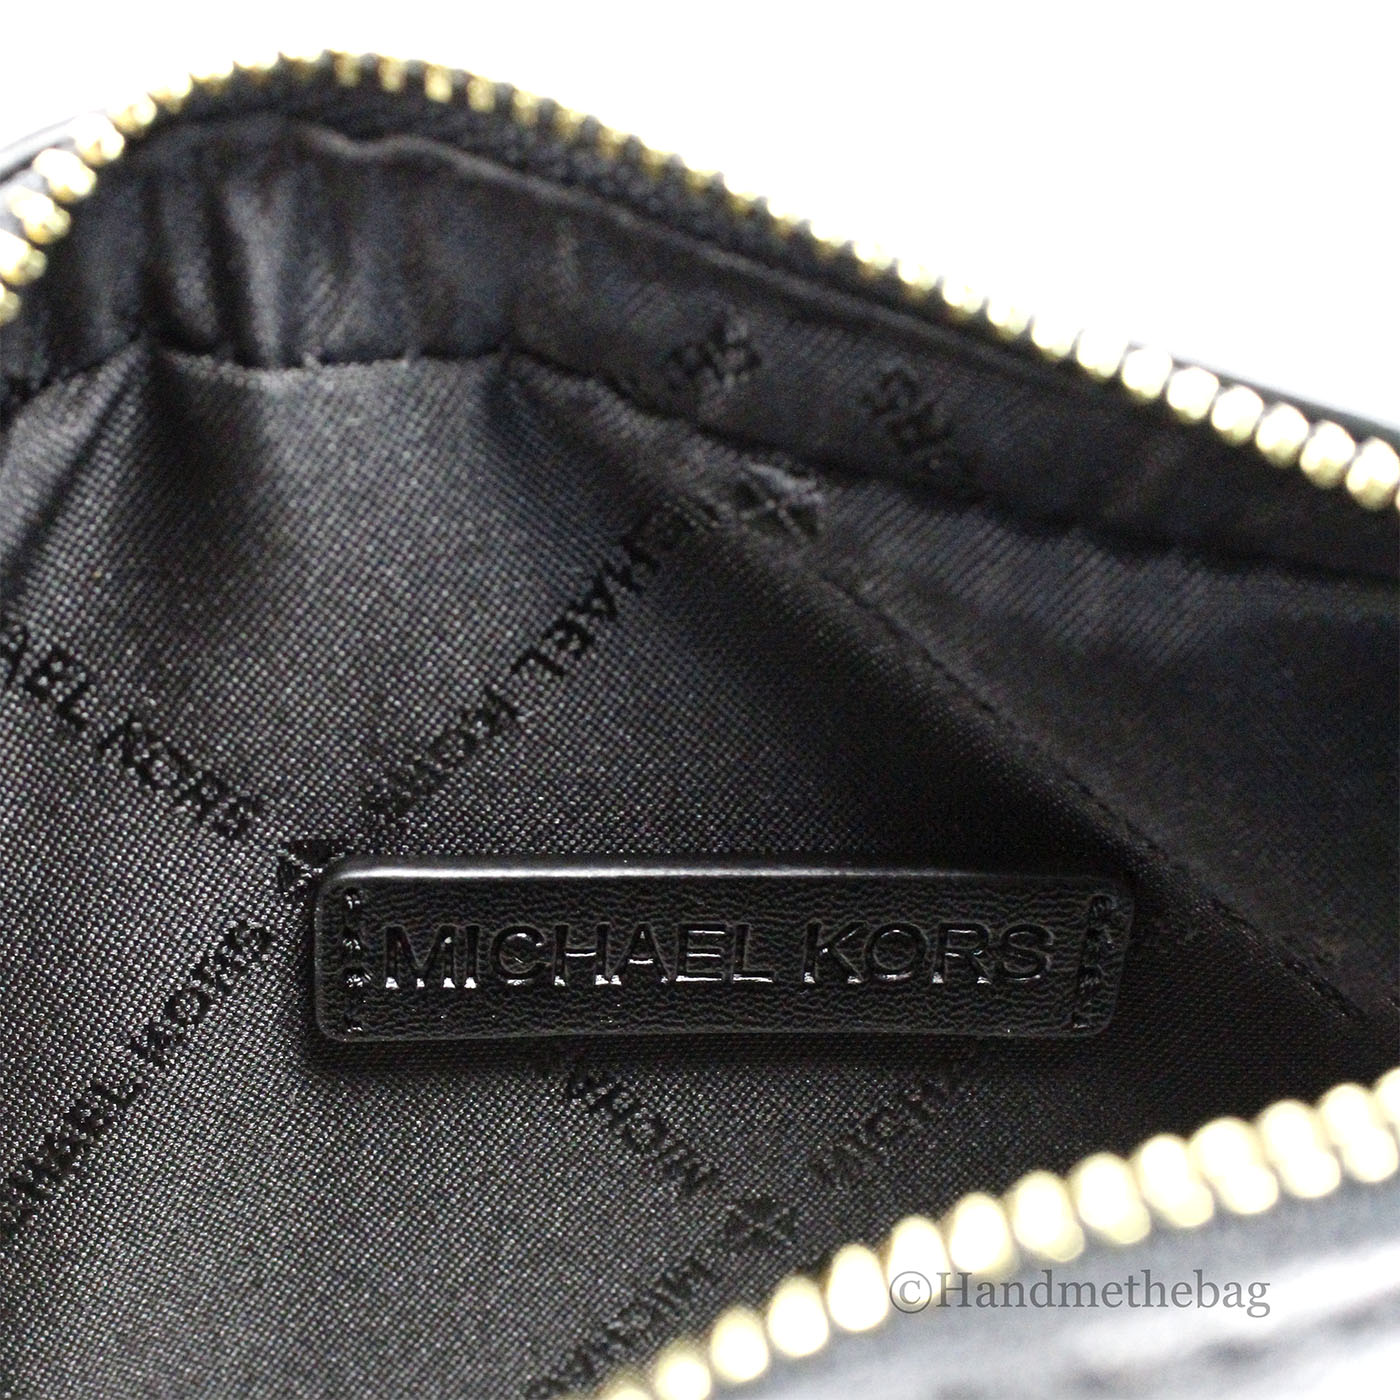 Michael Kors Jet Set Small Black Leather East West Belt Bag